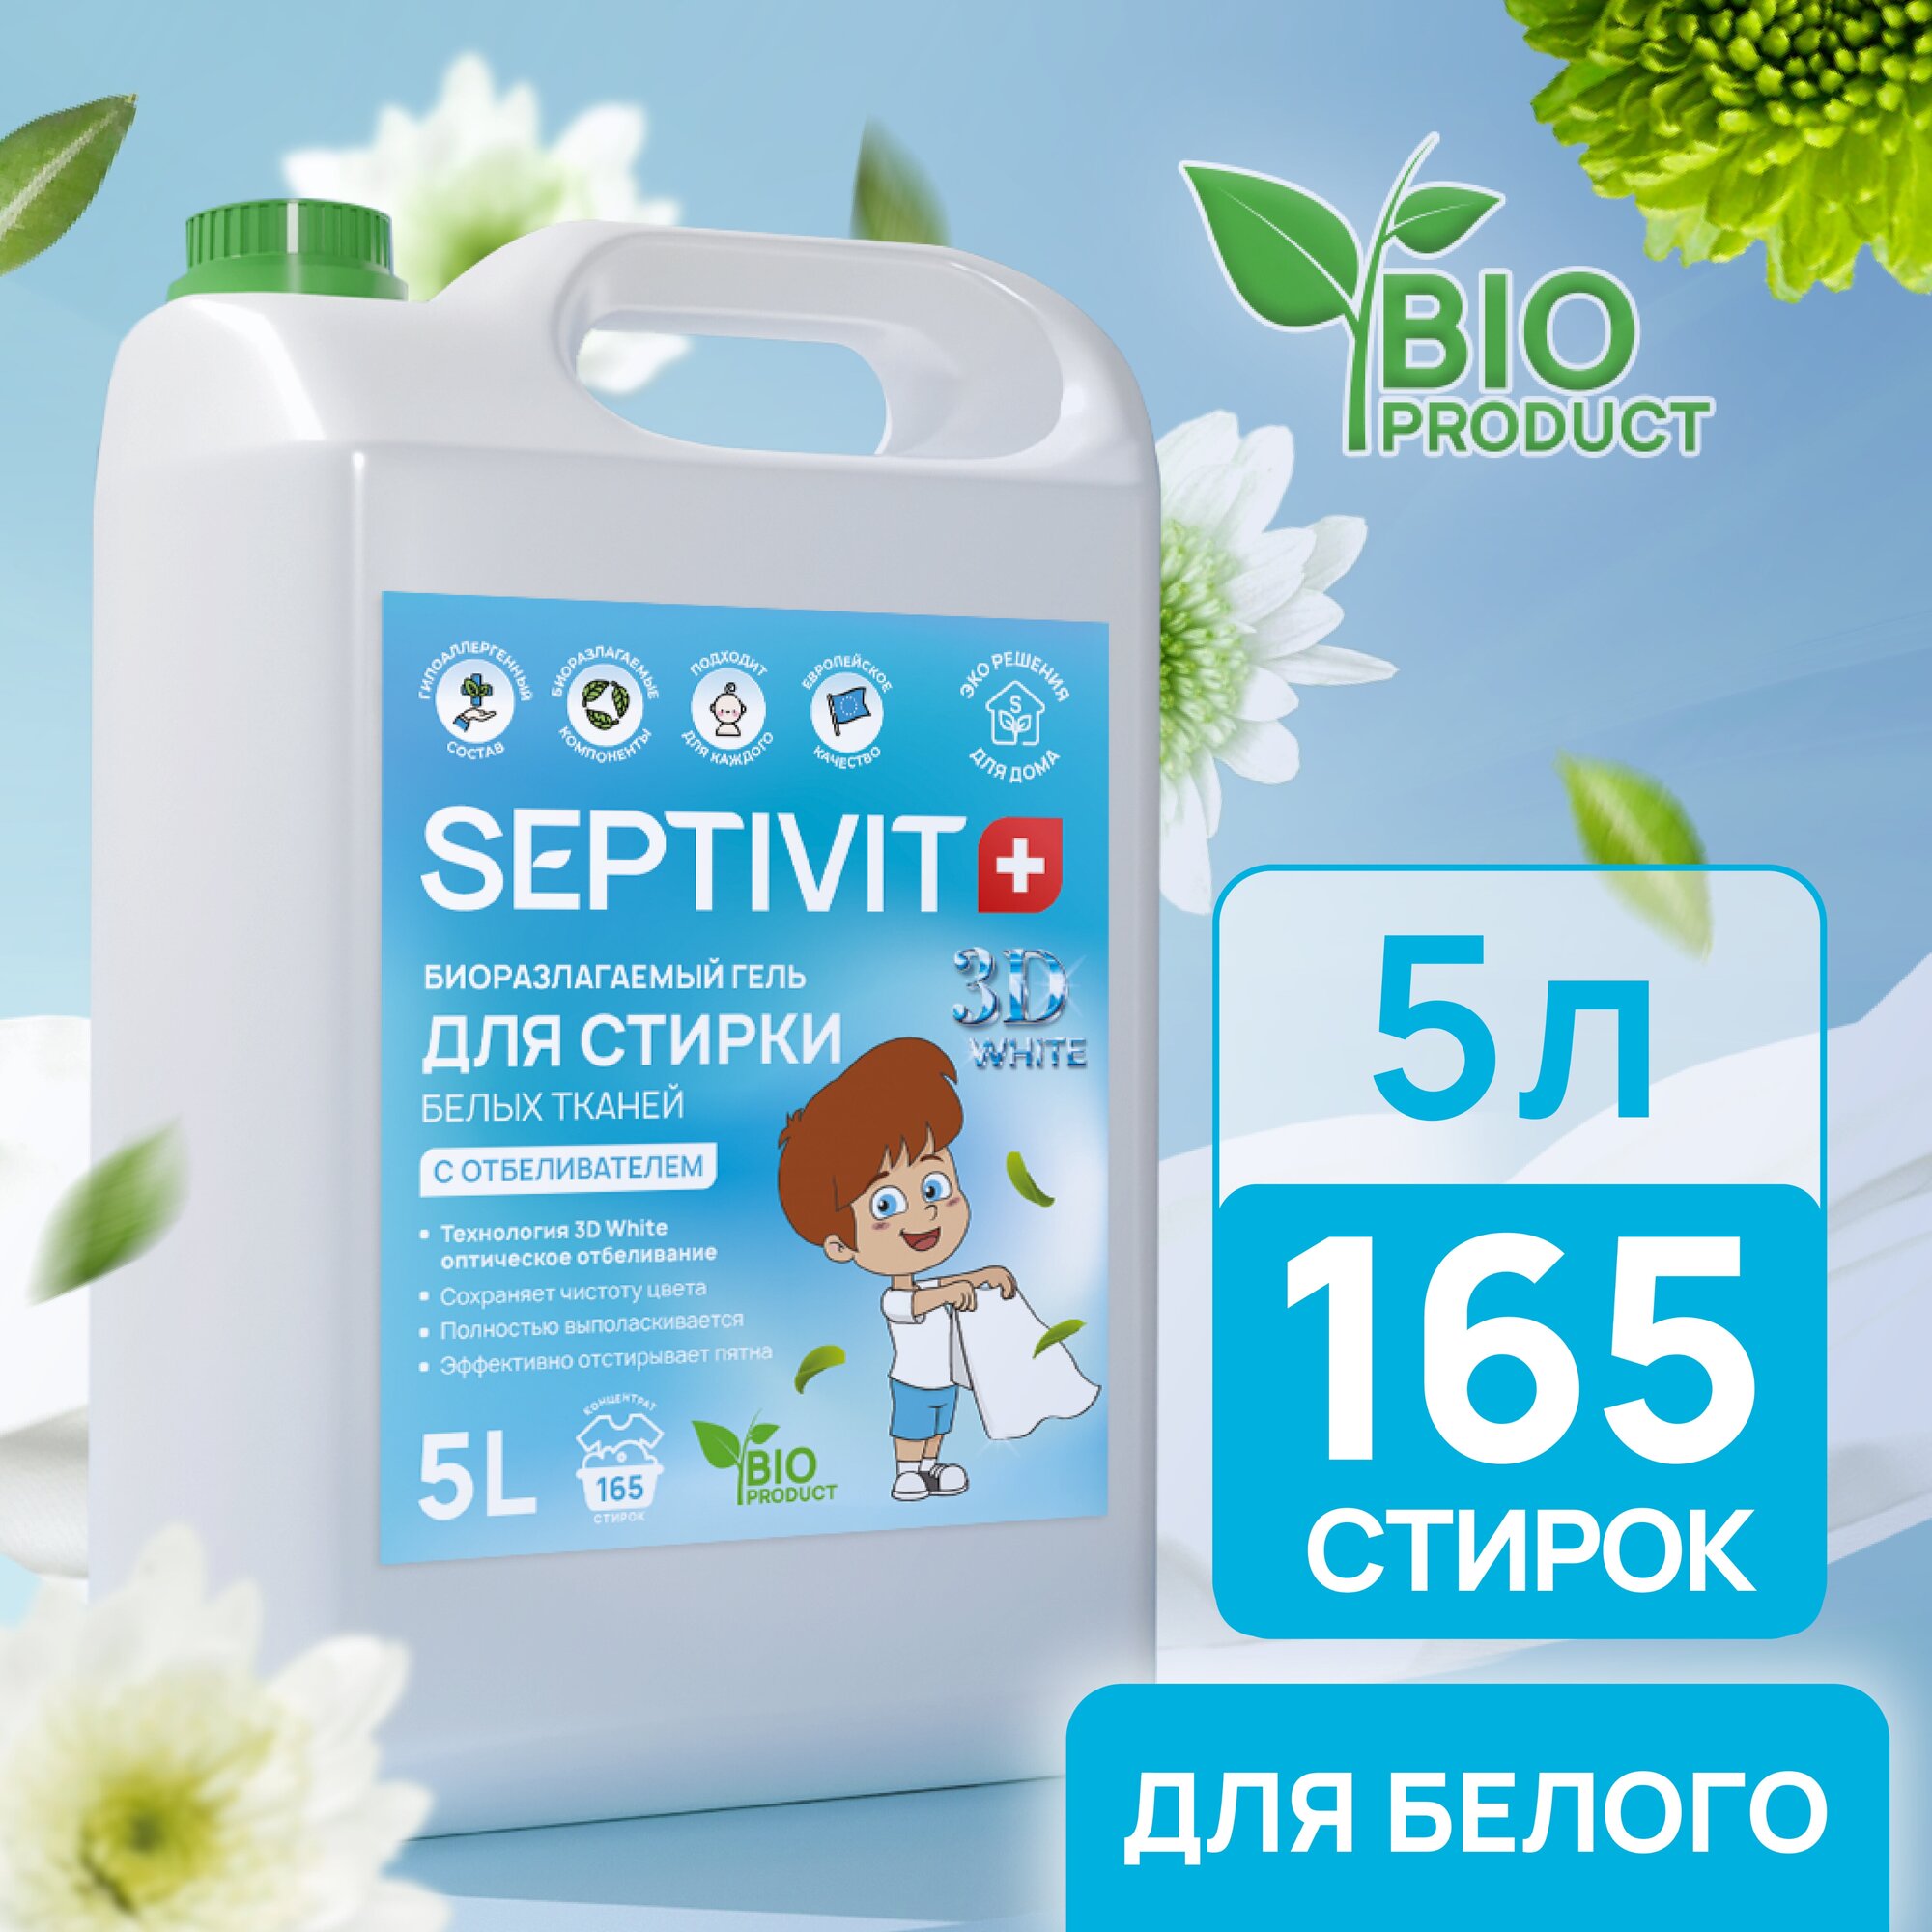 Гель для стирки Белого белья SEPTIVIT Premium / Гель для стирки детского белья гипоаллергенный / Средство для стирки, 5л